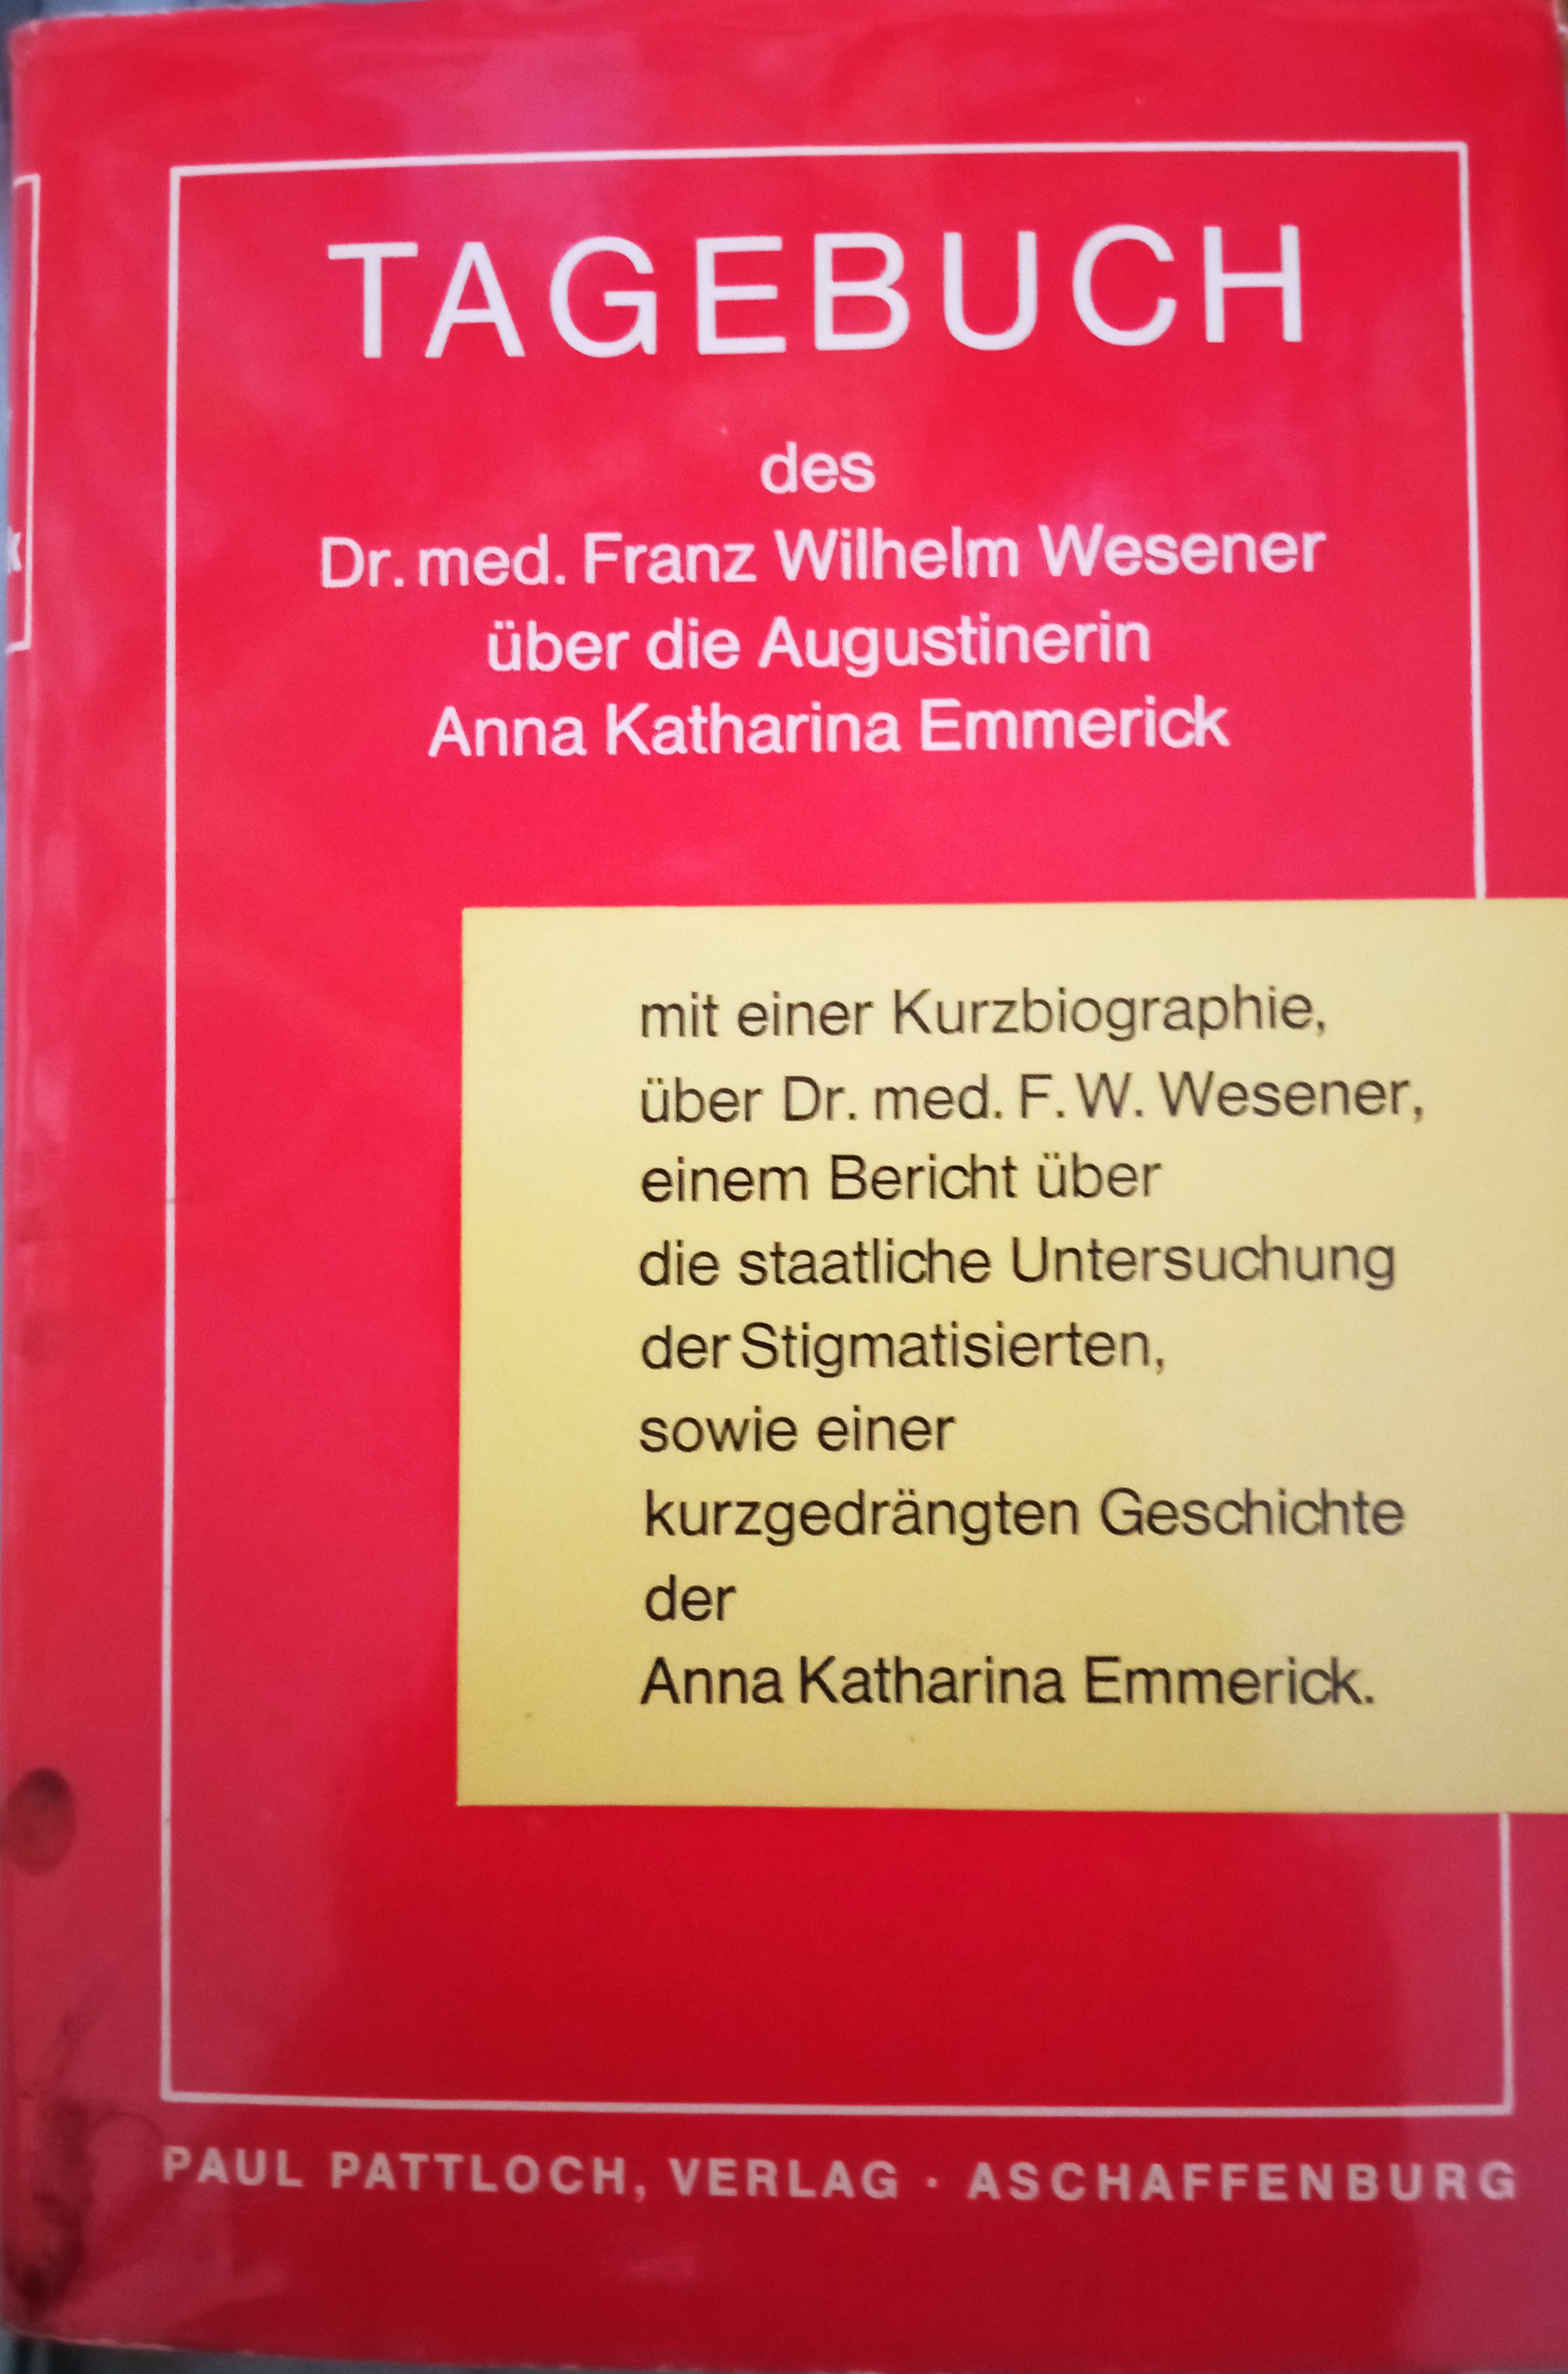 Franz Wilhelm Wesener: Tagebuch des Dr. med. Franz Wilhelm Wesener über die Augustinerin Anna Katharina Emmerick (Hardcover, Deutsch language, Paul Pattloch Verlag Aschaffenburg)